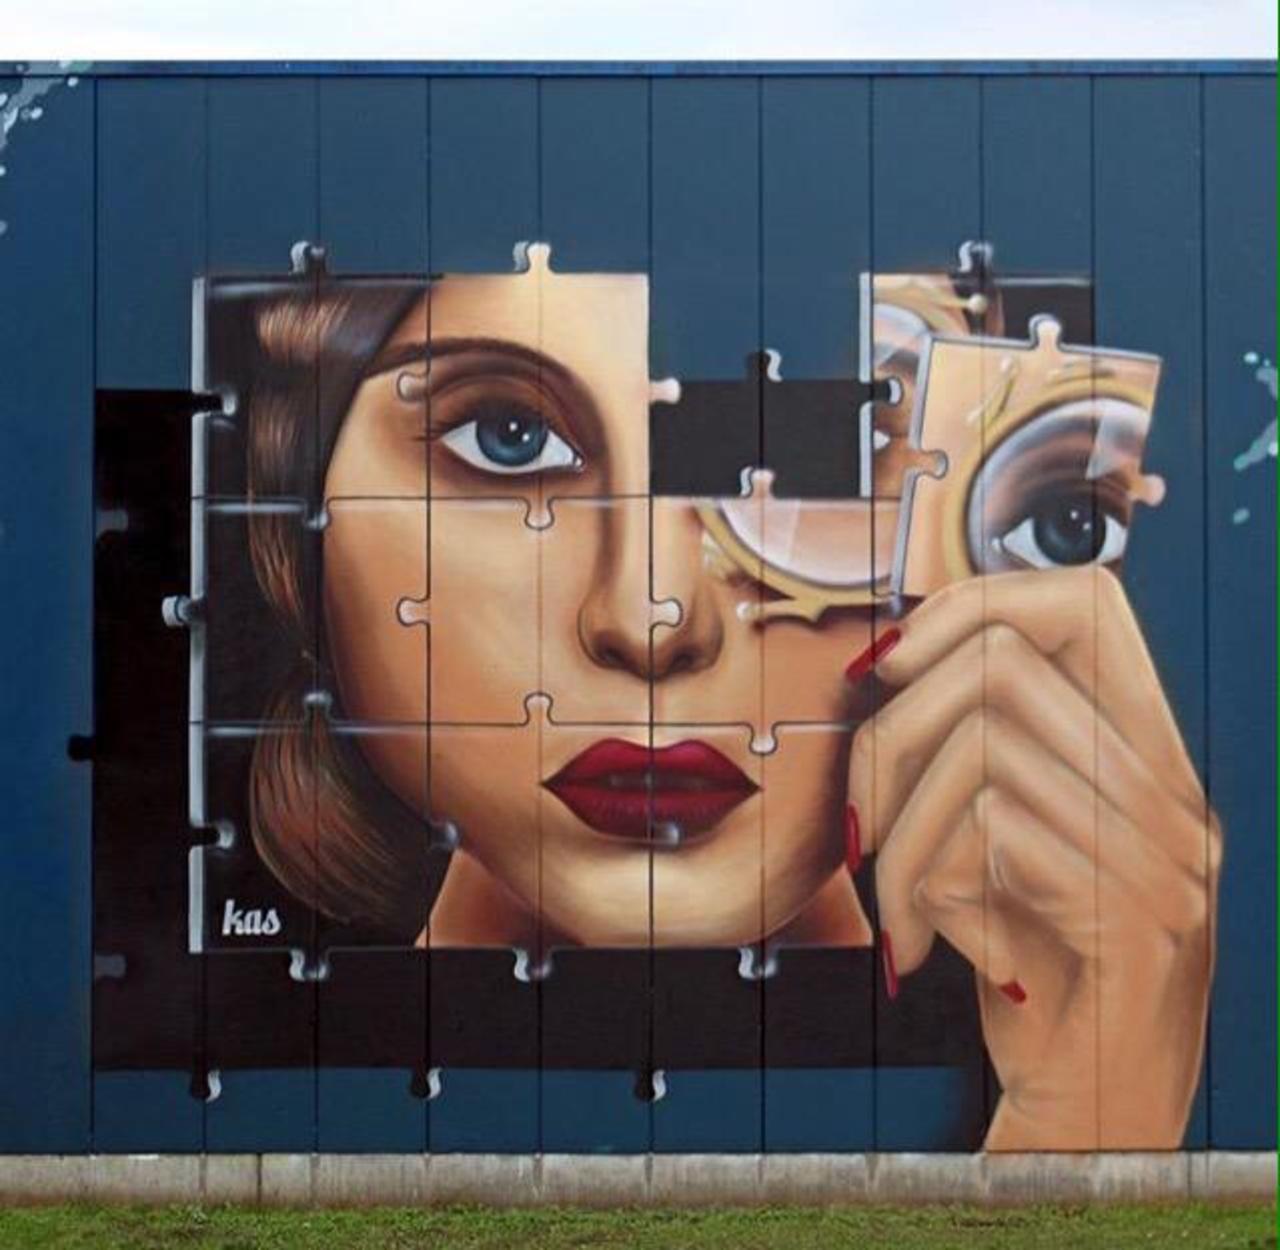 Kas Art's new Street Art "Piece of me" in Aalst Belgium 

#art #graffiti #mural #streetart http://t.co/7HYvYrItmT